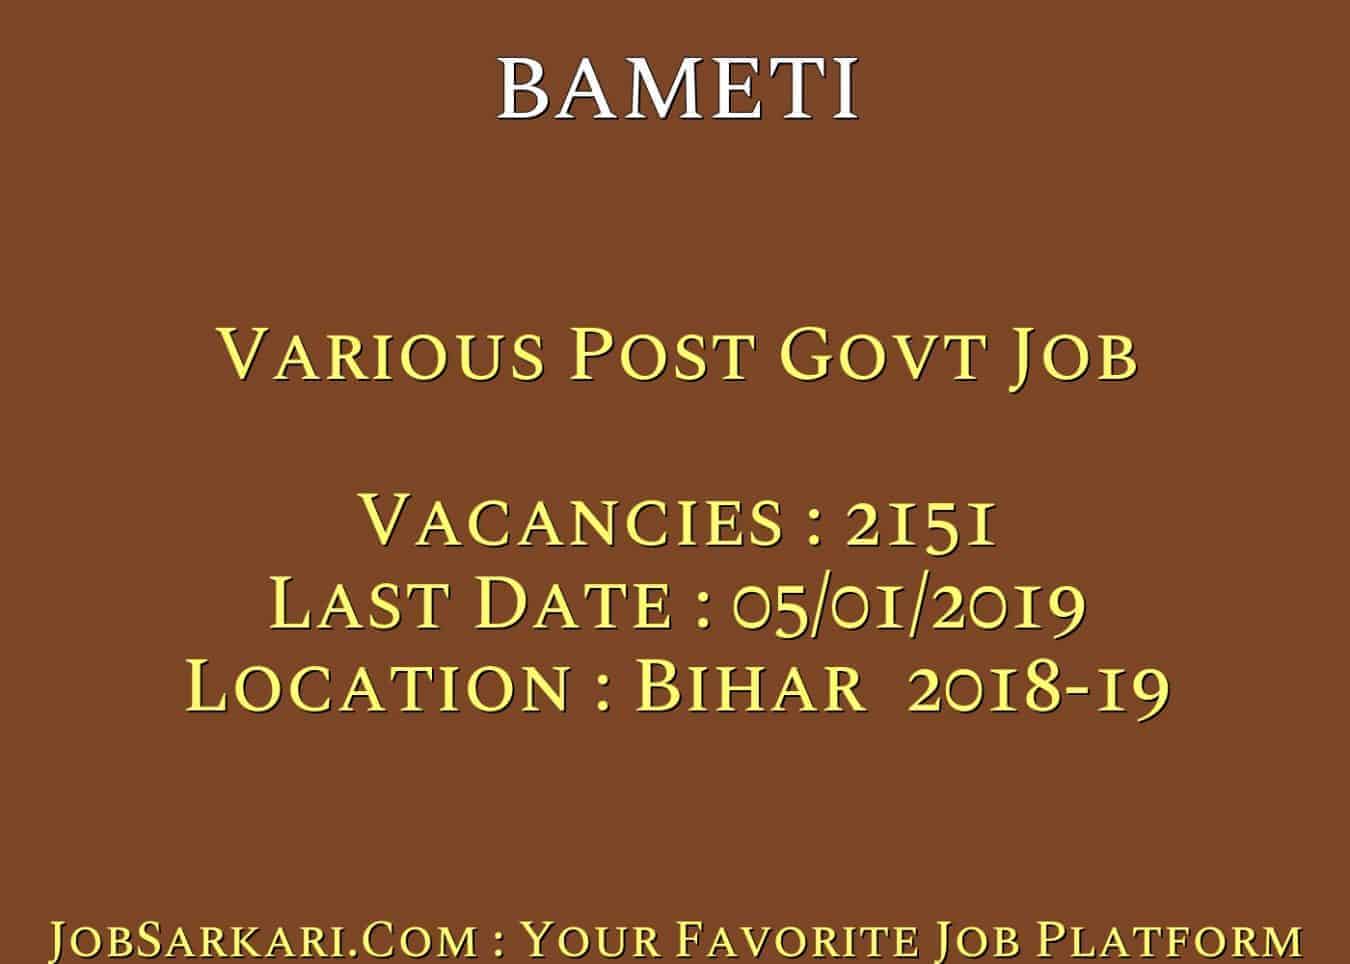 BAMETI Recruitment 2018 For Various Post Govt Job